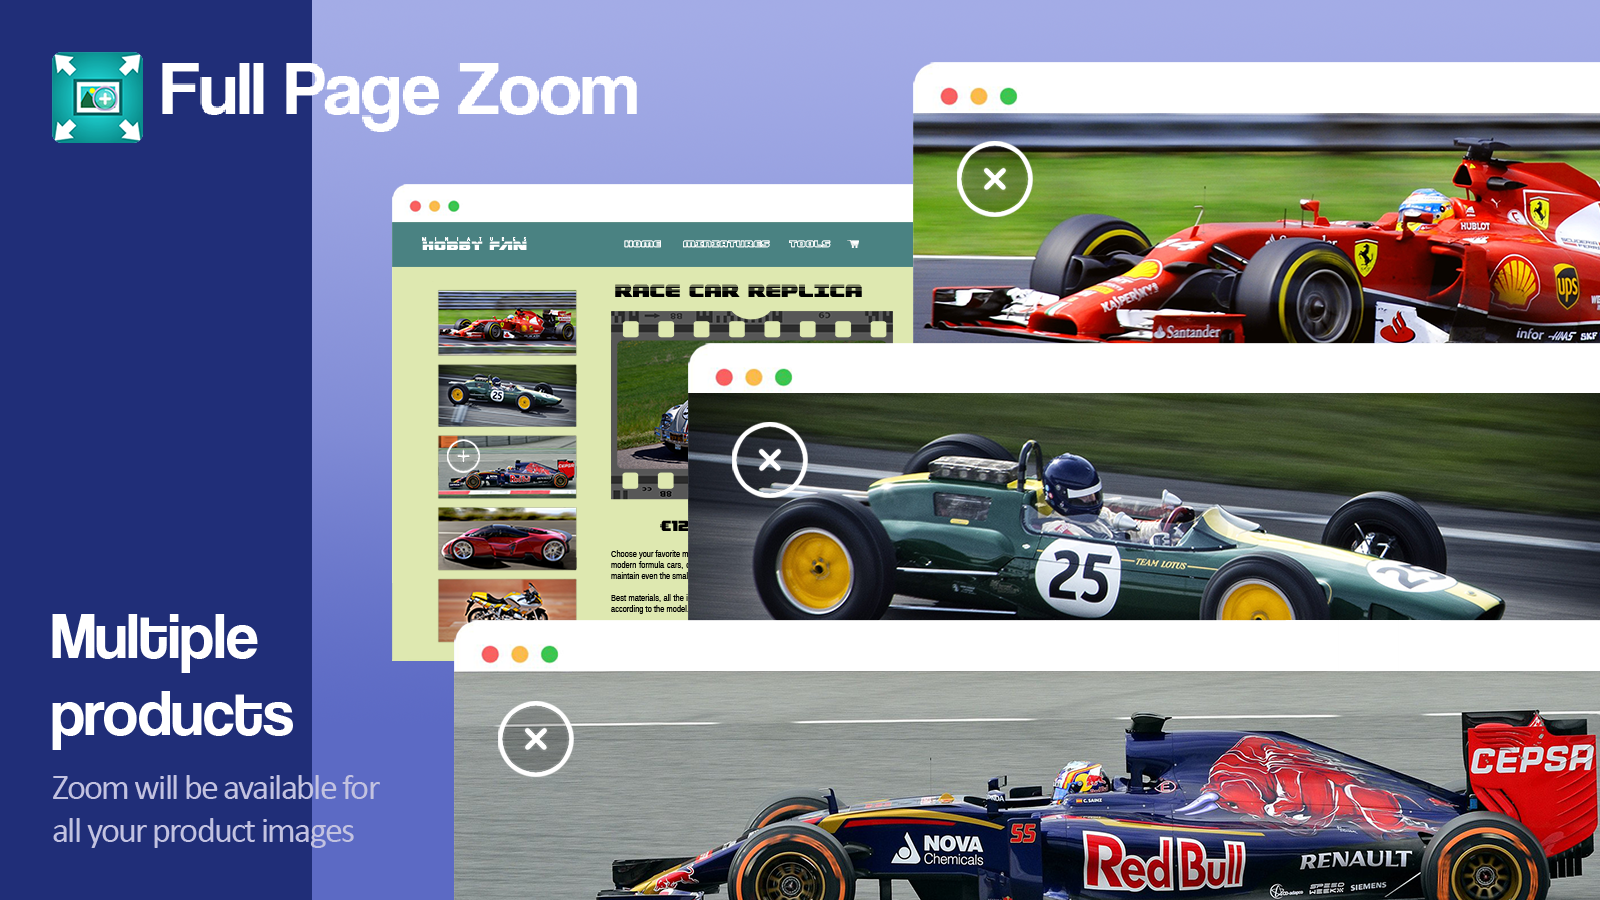 Zoom vil være tilgængelig for alle dine produktbilleder